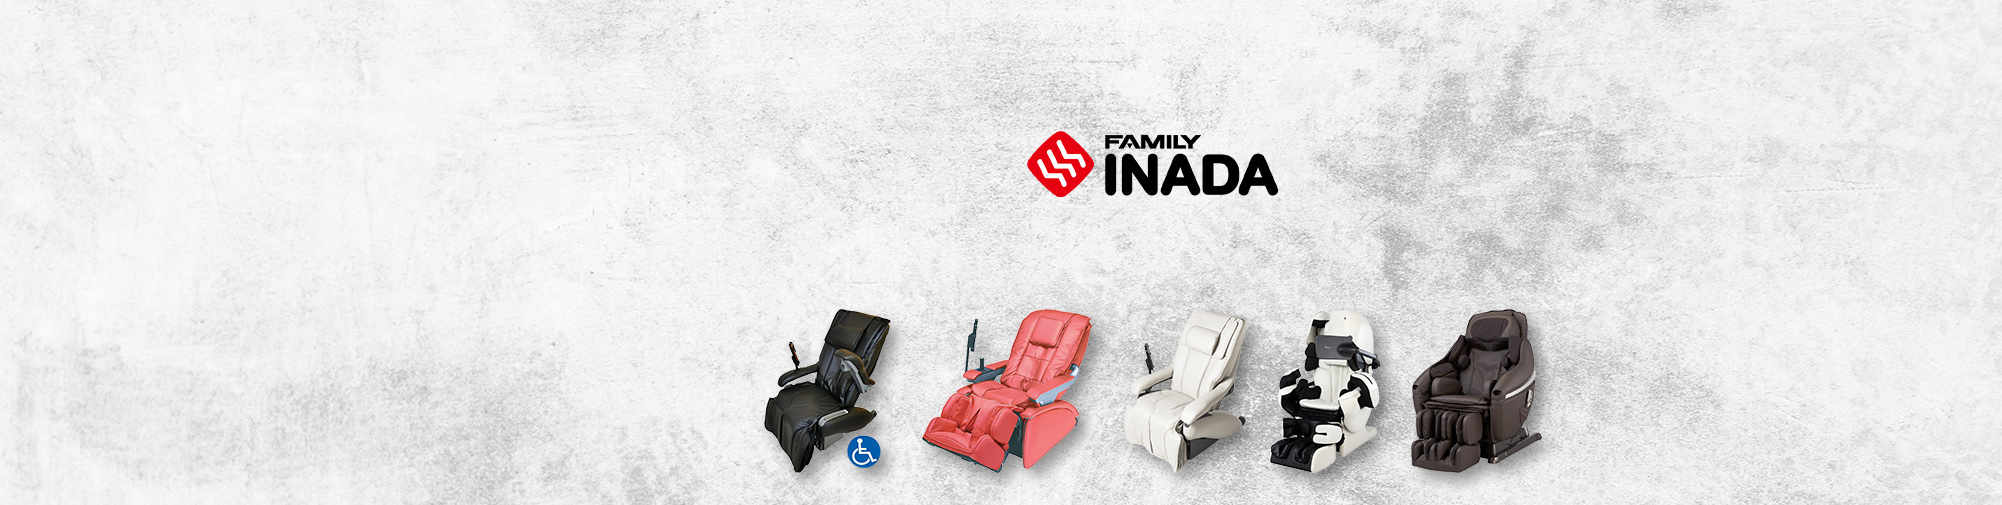 稻田家族--传统的日本公司 | 按摩椅世界